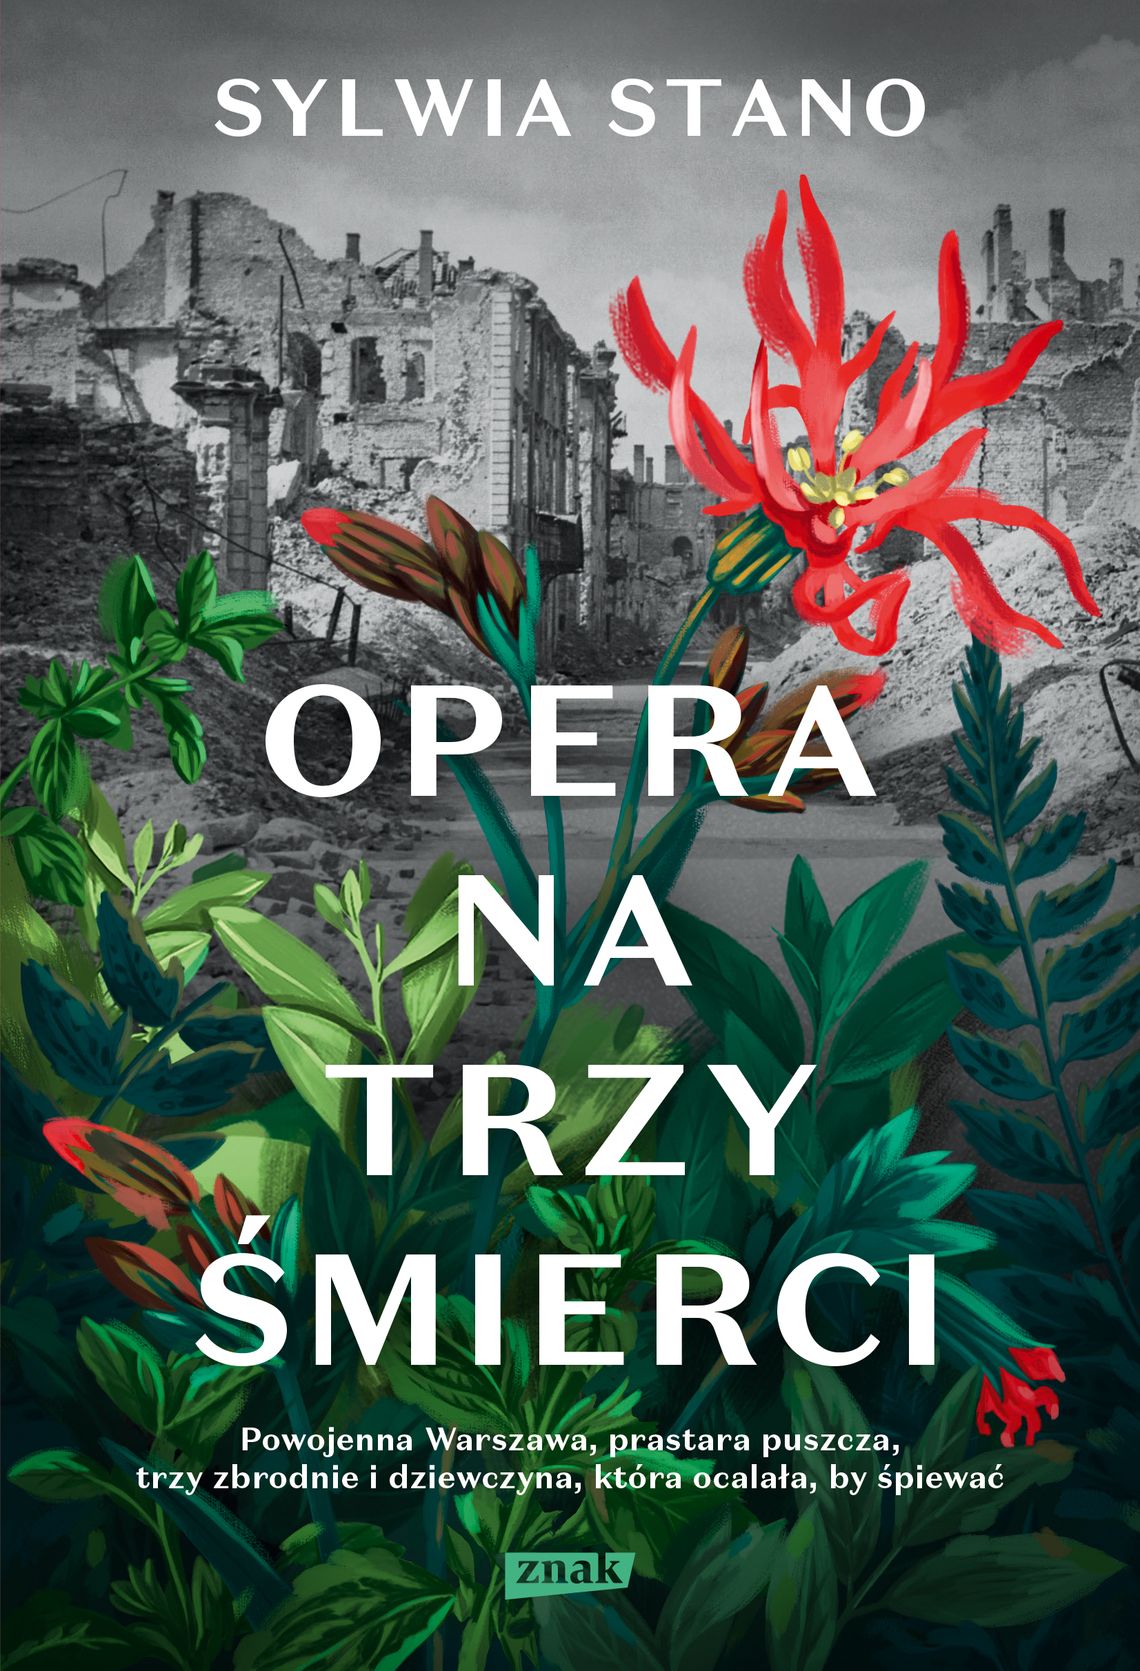 "Opera na trzy śmierci" - Sylwia Stano